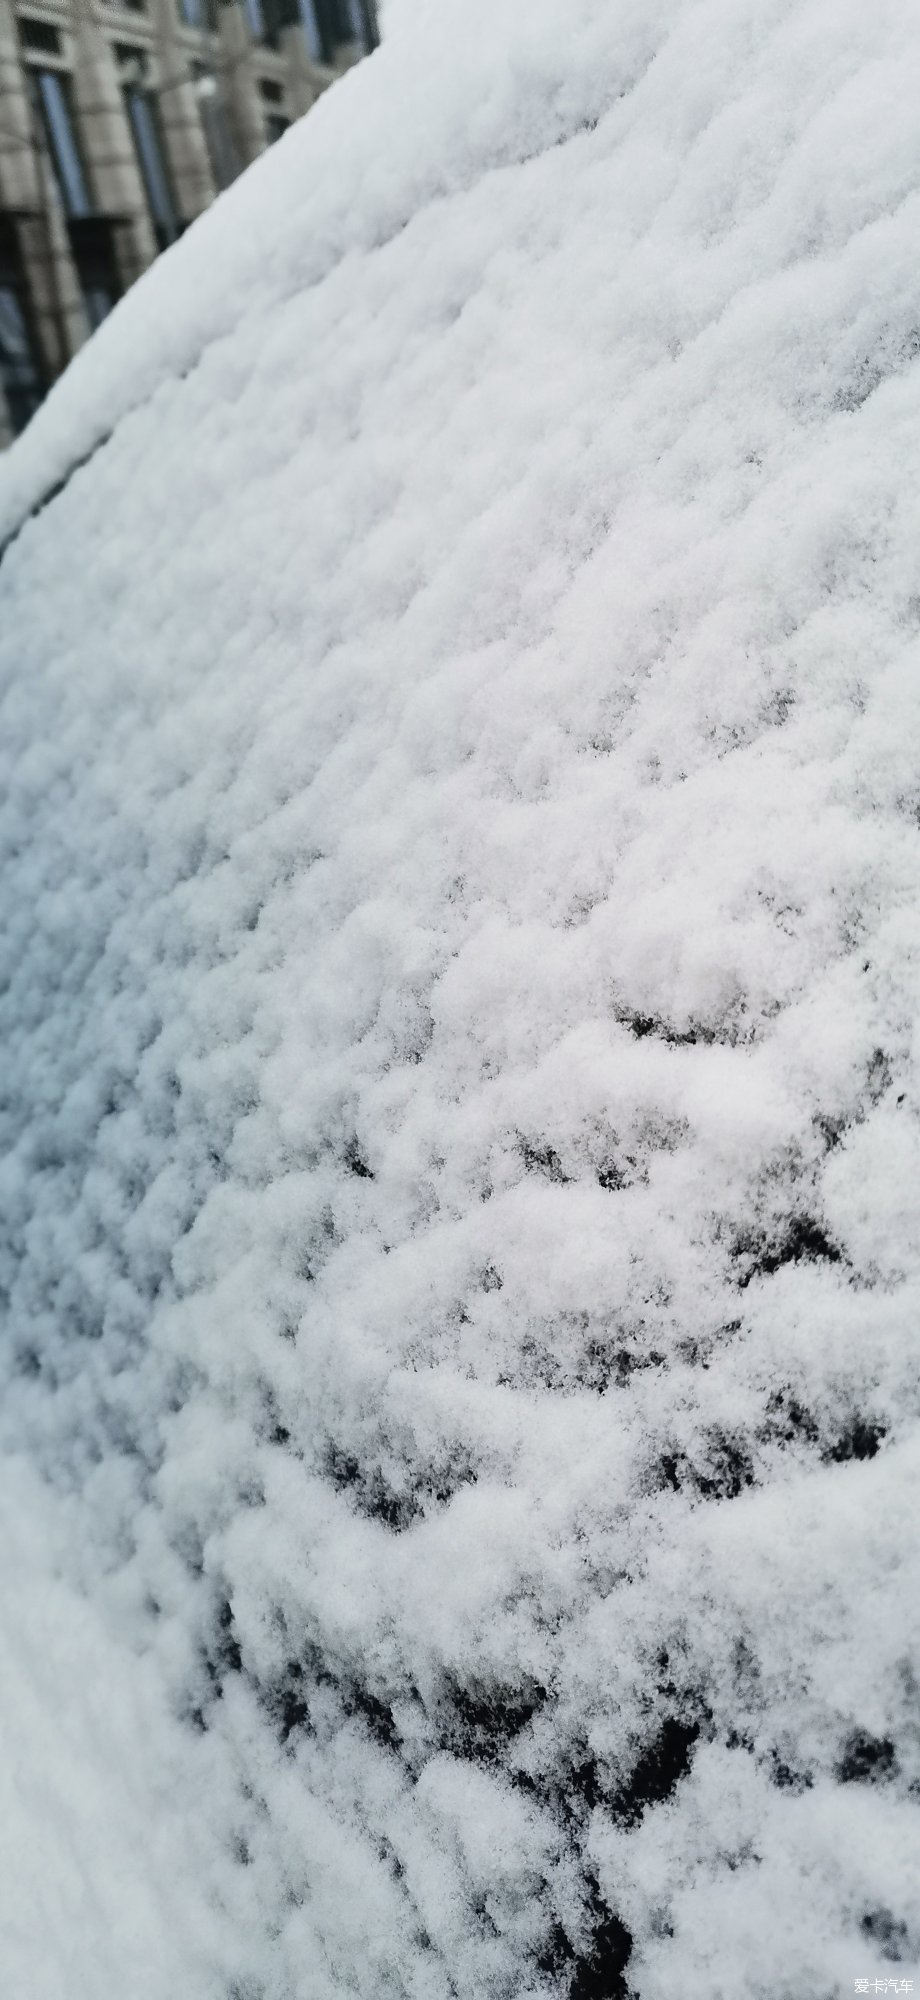 【寻雪】初冬的第一场雪